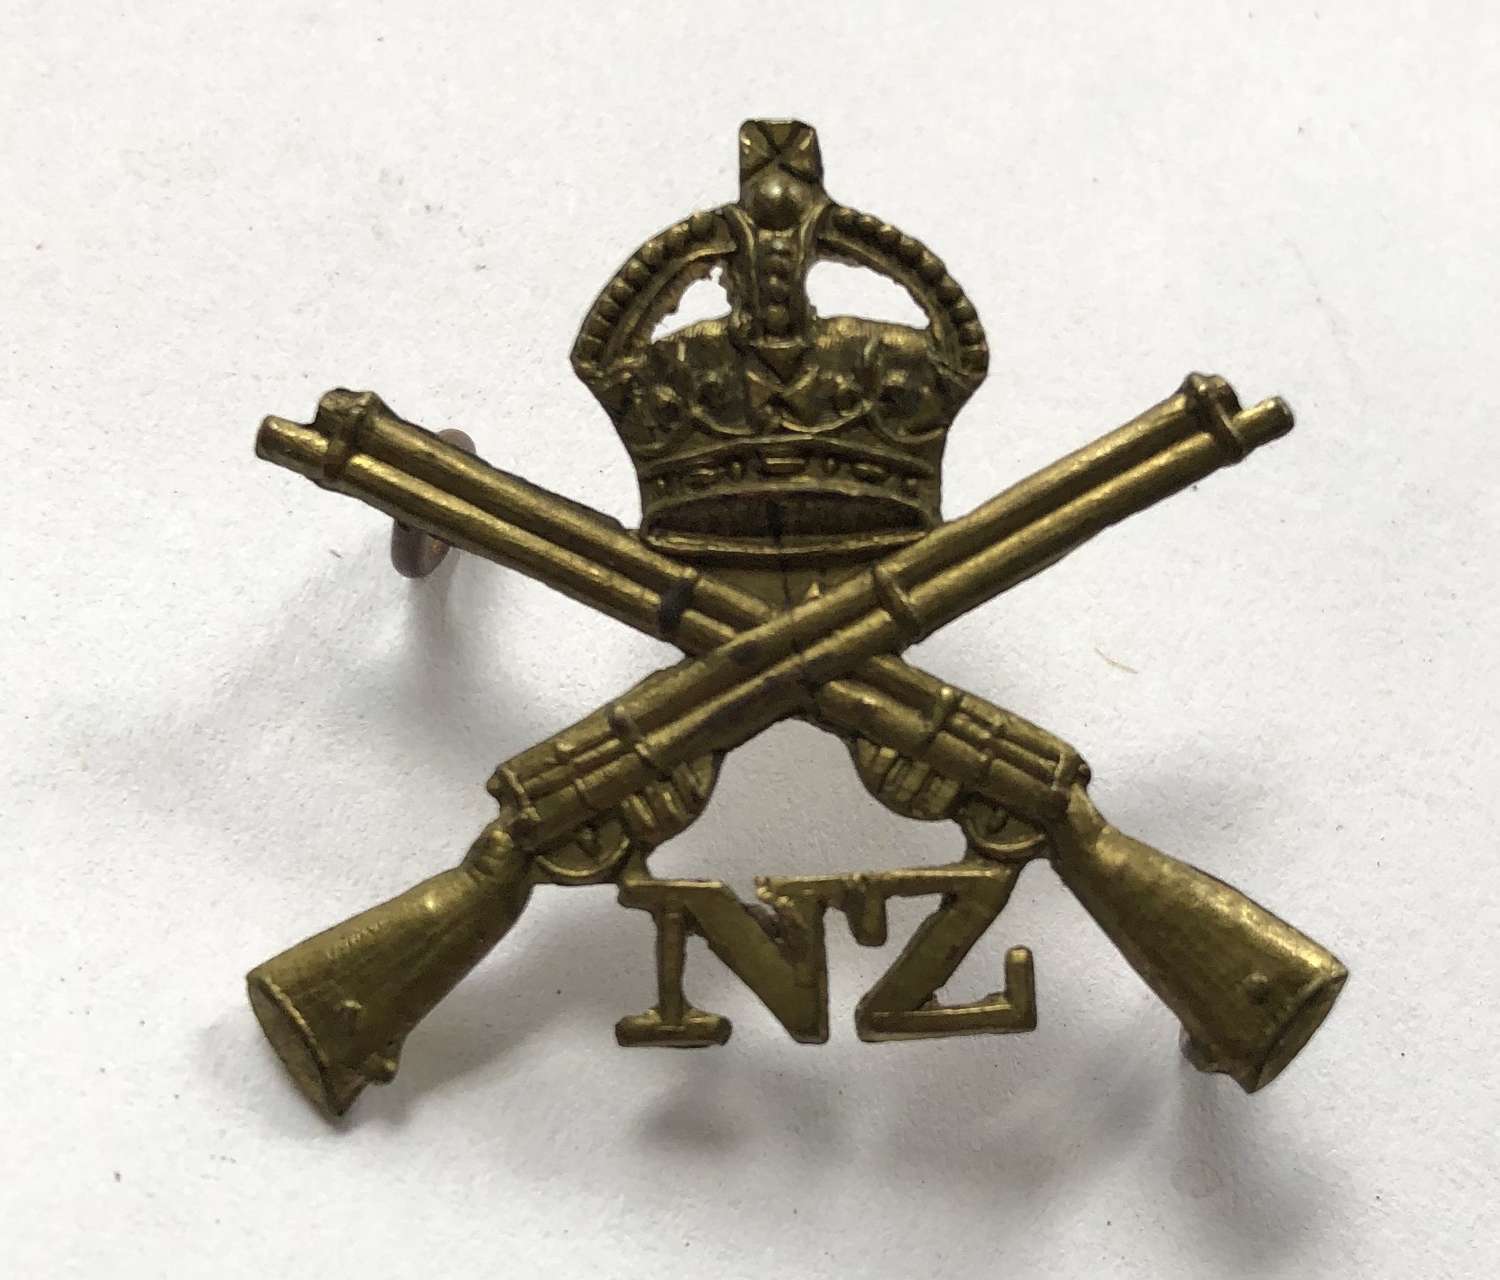 New Zealand School of Musketry cap/collar badge